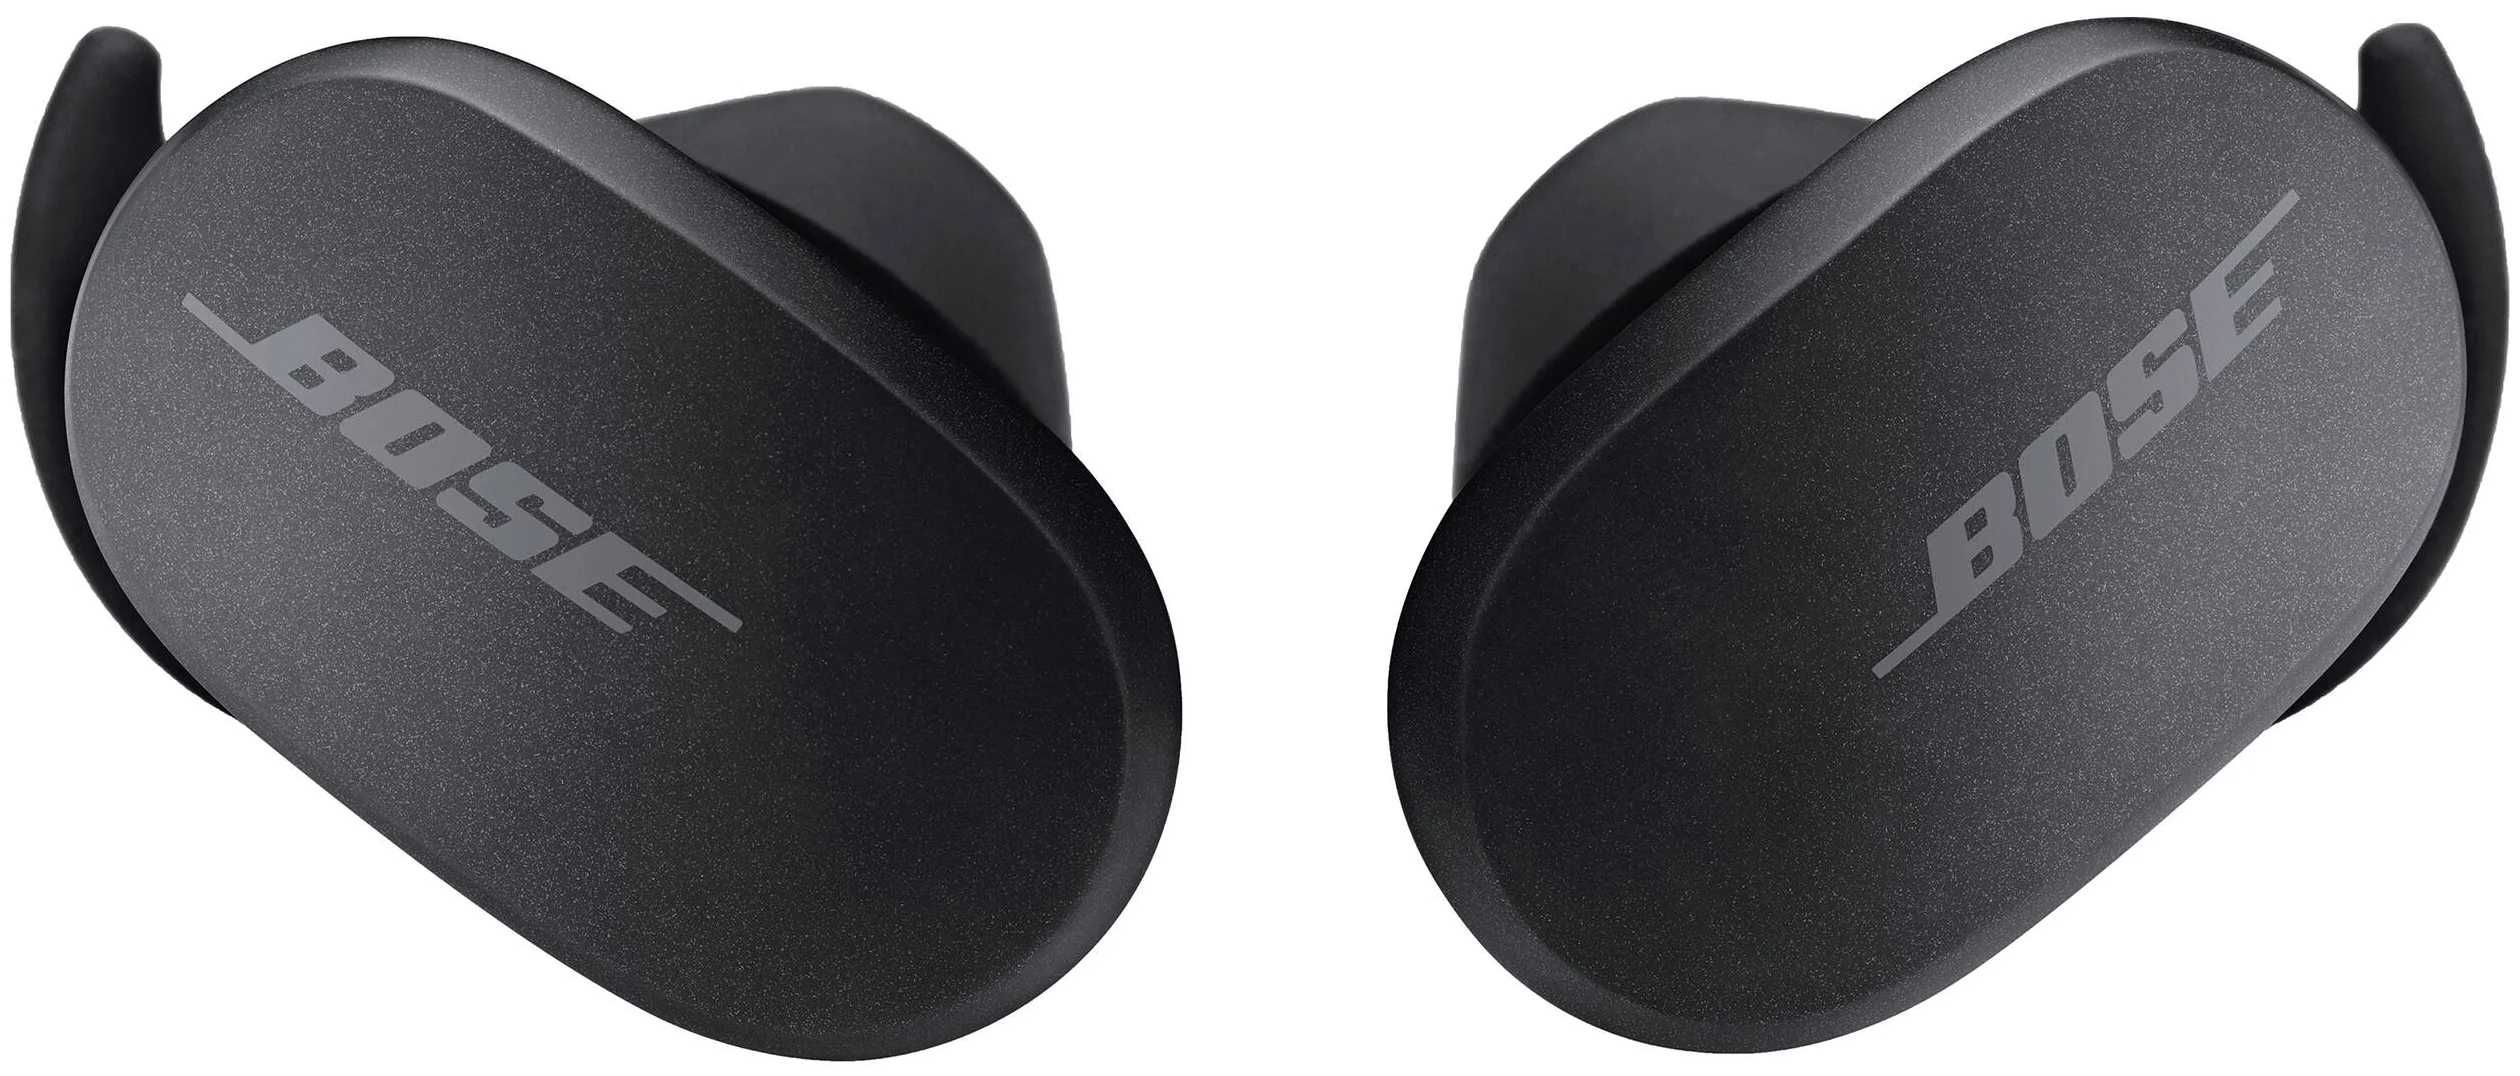 Bose QuietComfort Earbuds Беспроводные наушники